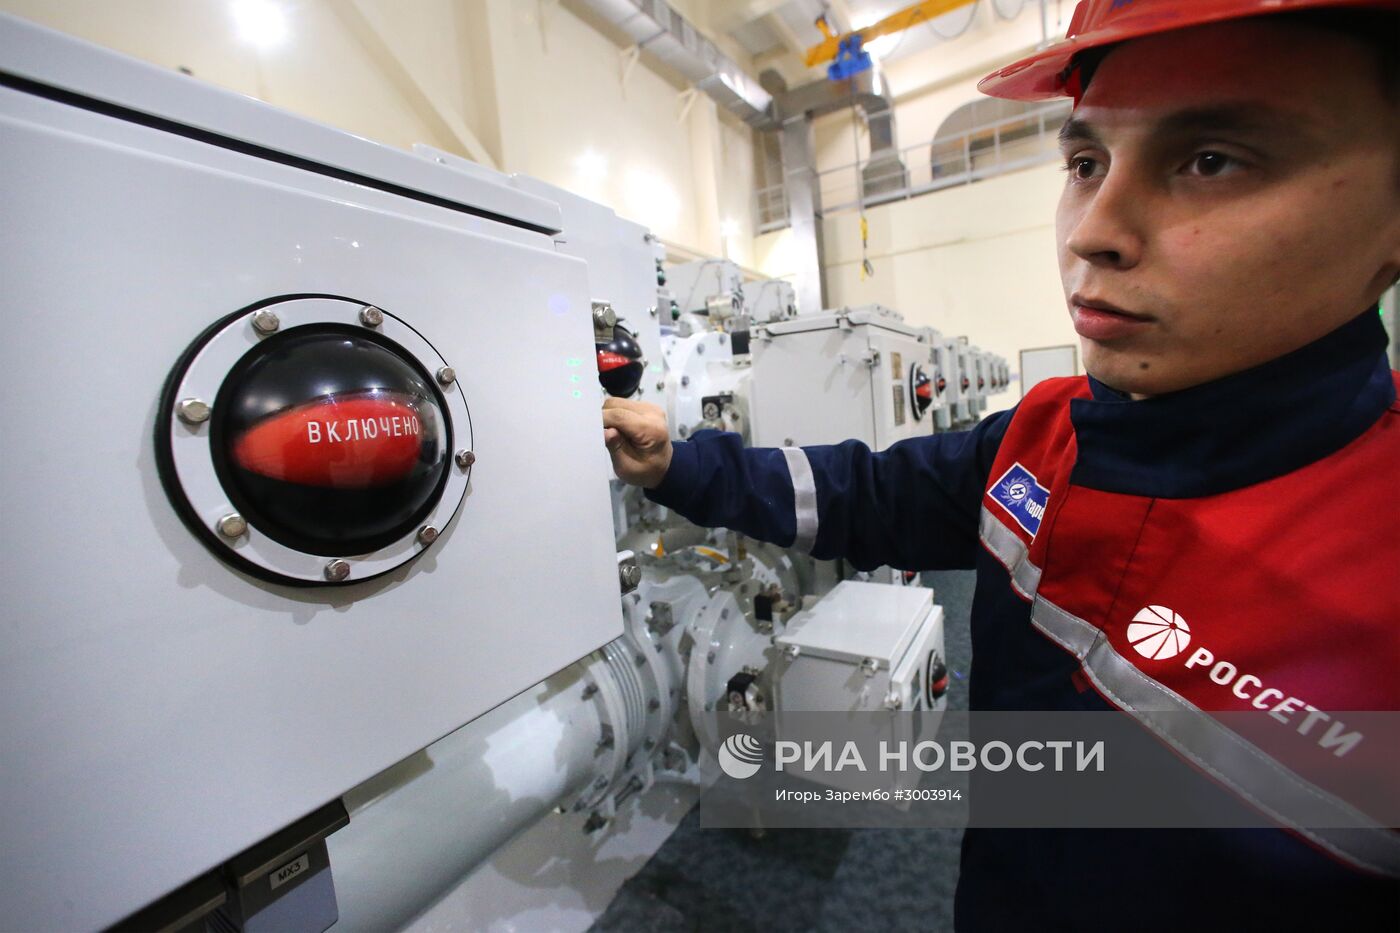 Церемония по случаю завершения работ на подстанции "Береговая" в Калининграде